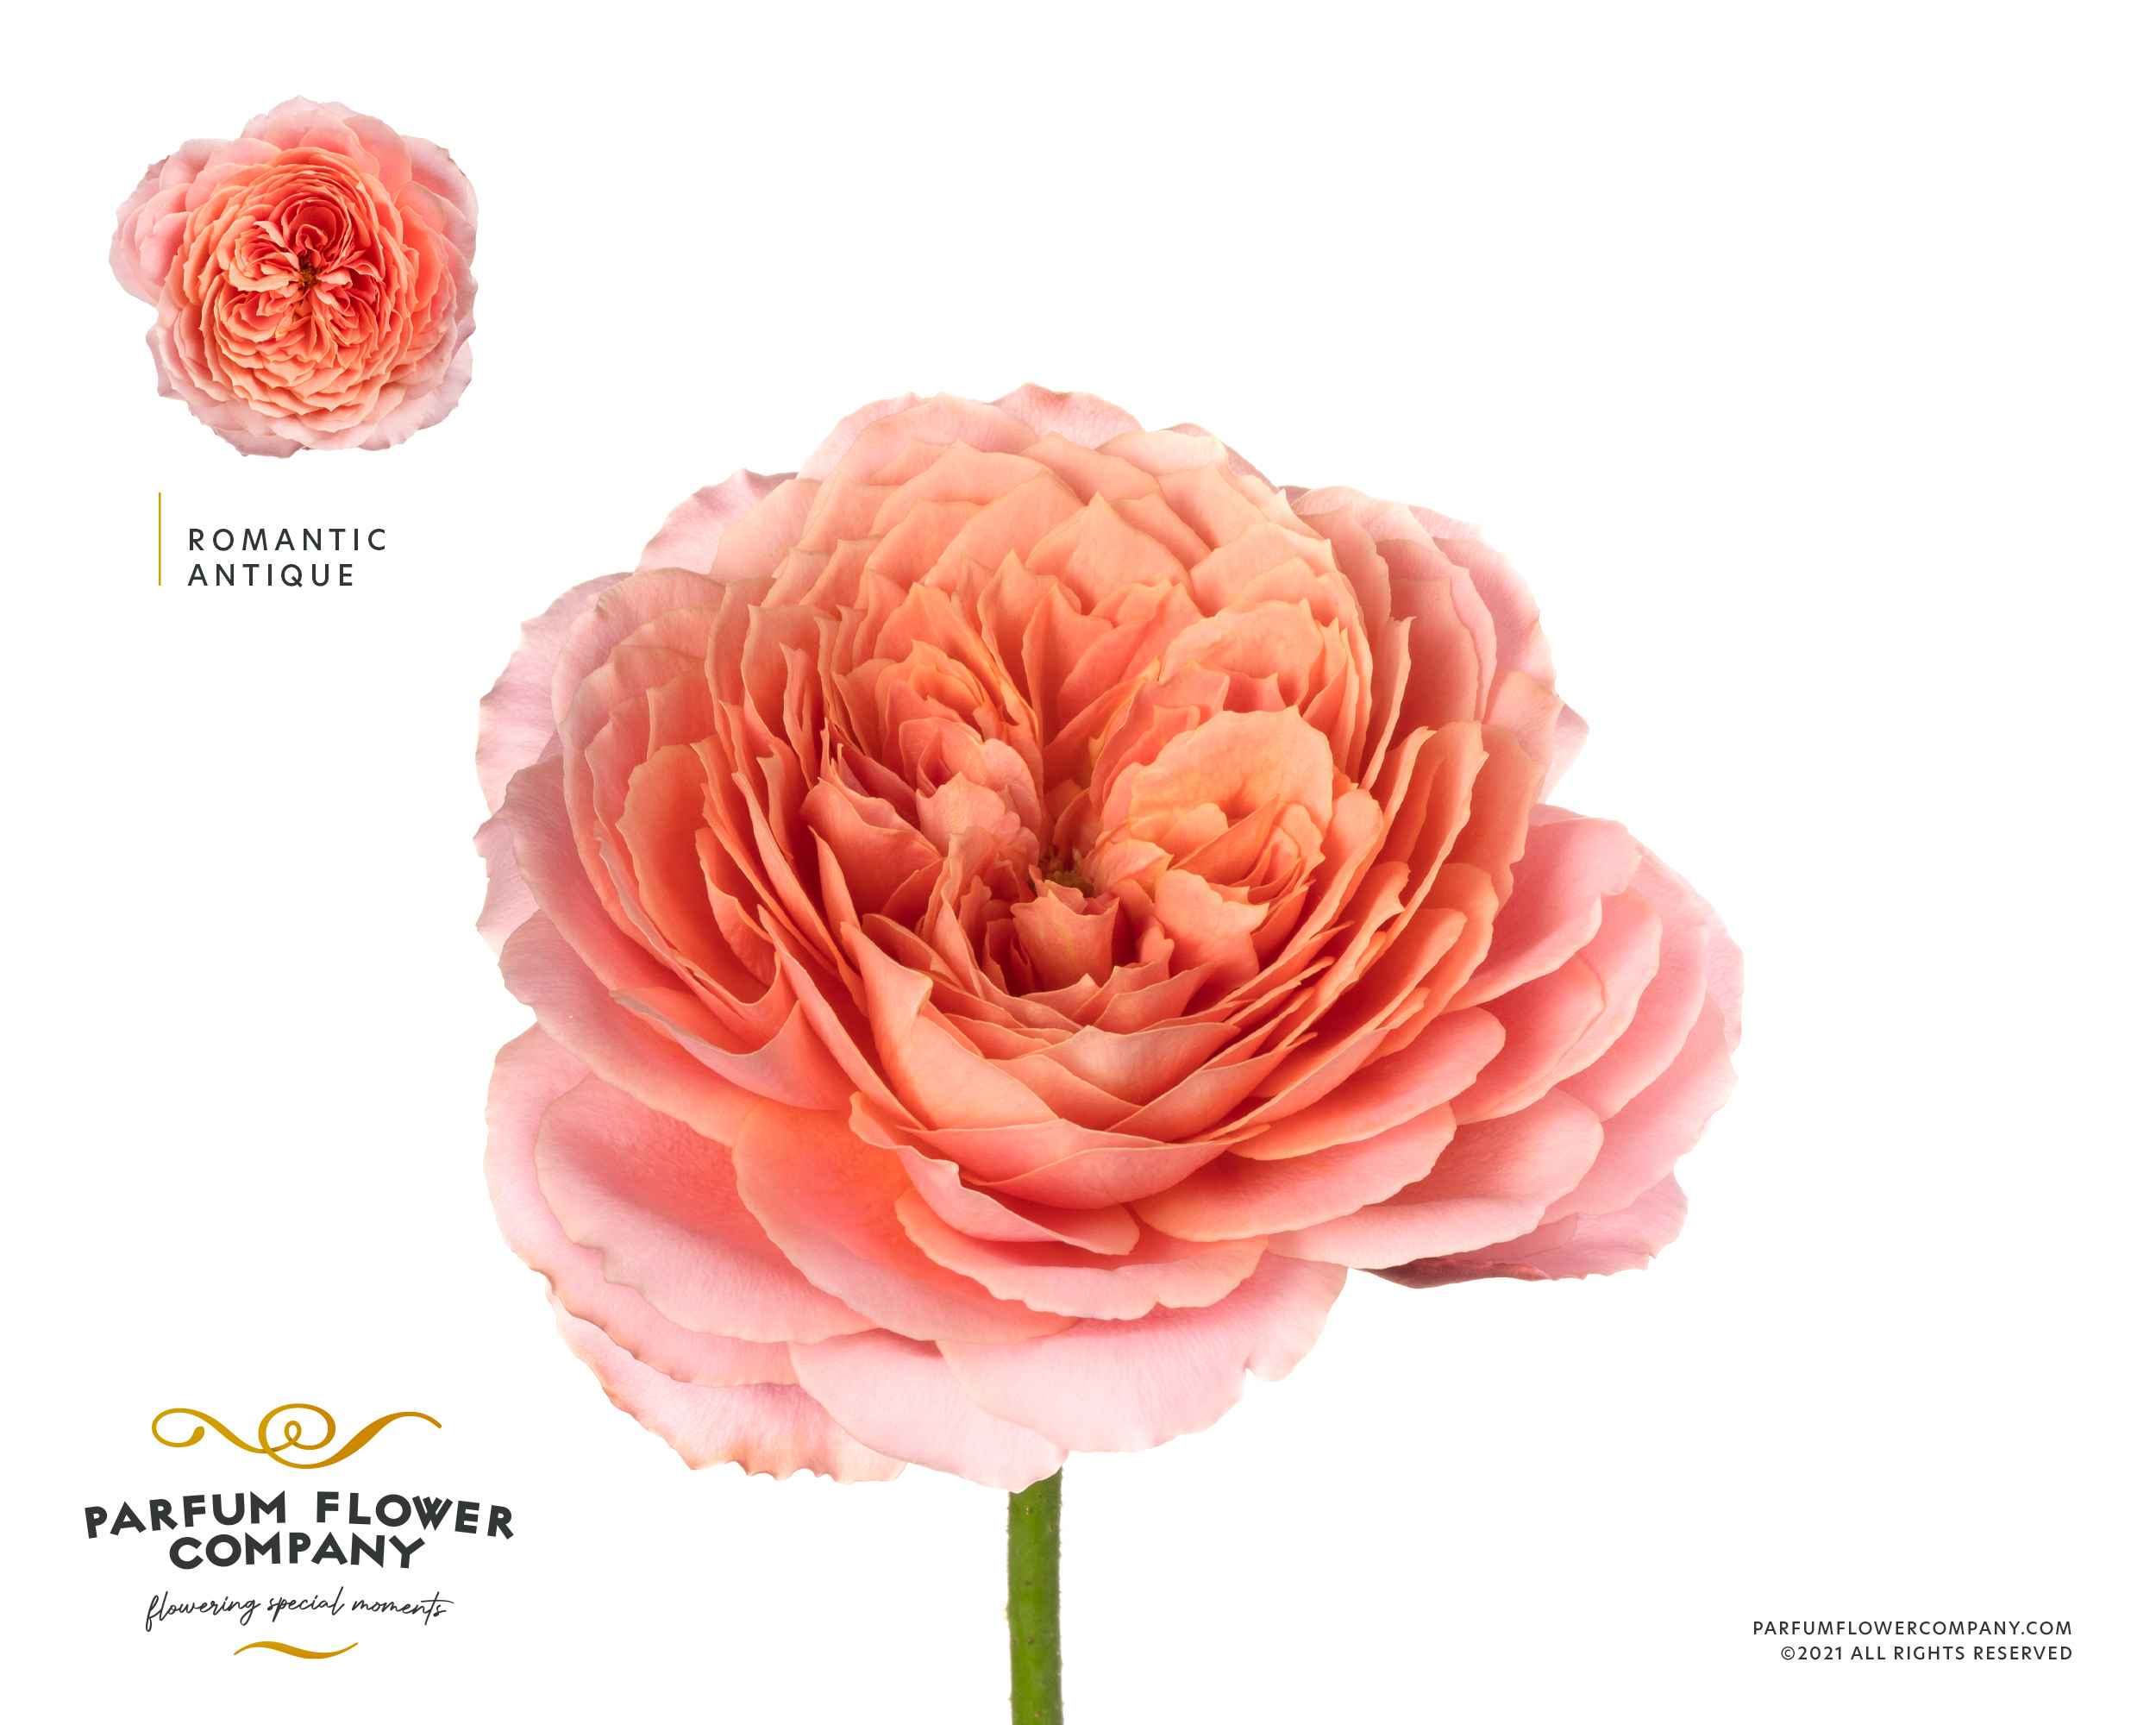 Срезанные цветы оптом Rosa la garden romantic antike от 12шт из Голландии с доставкой по России